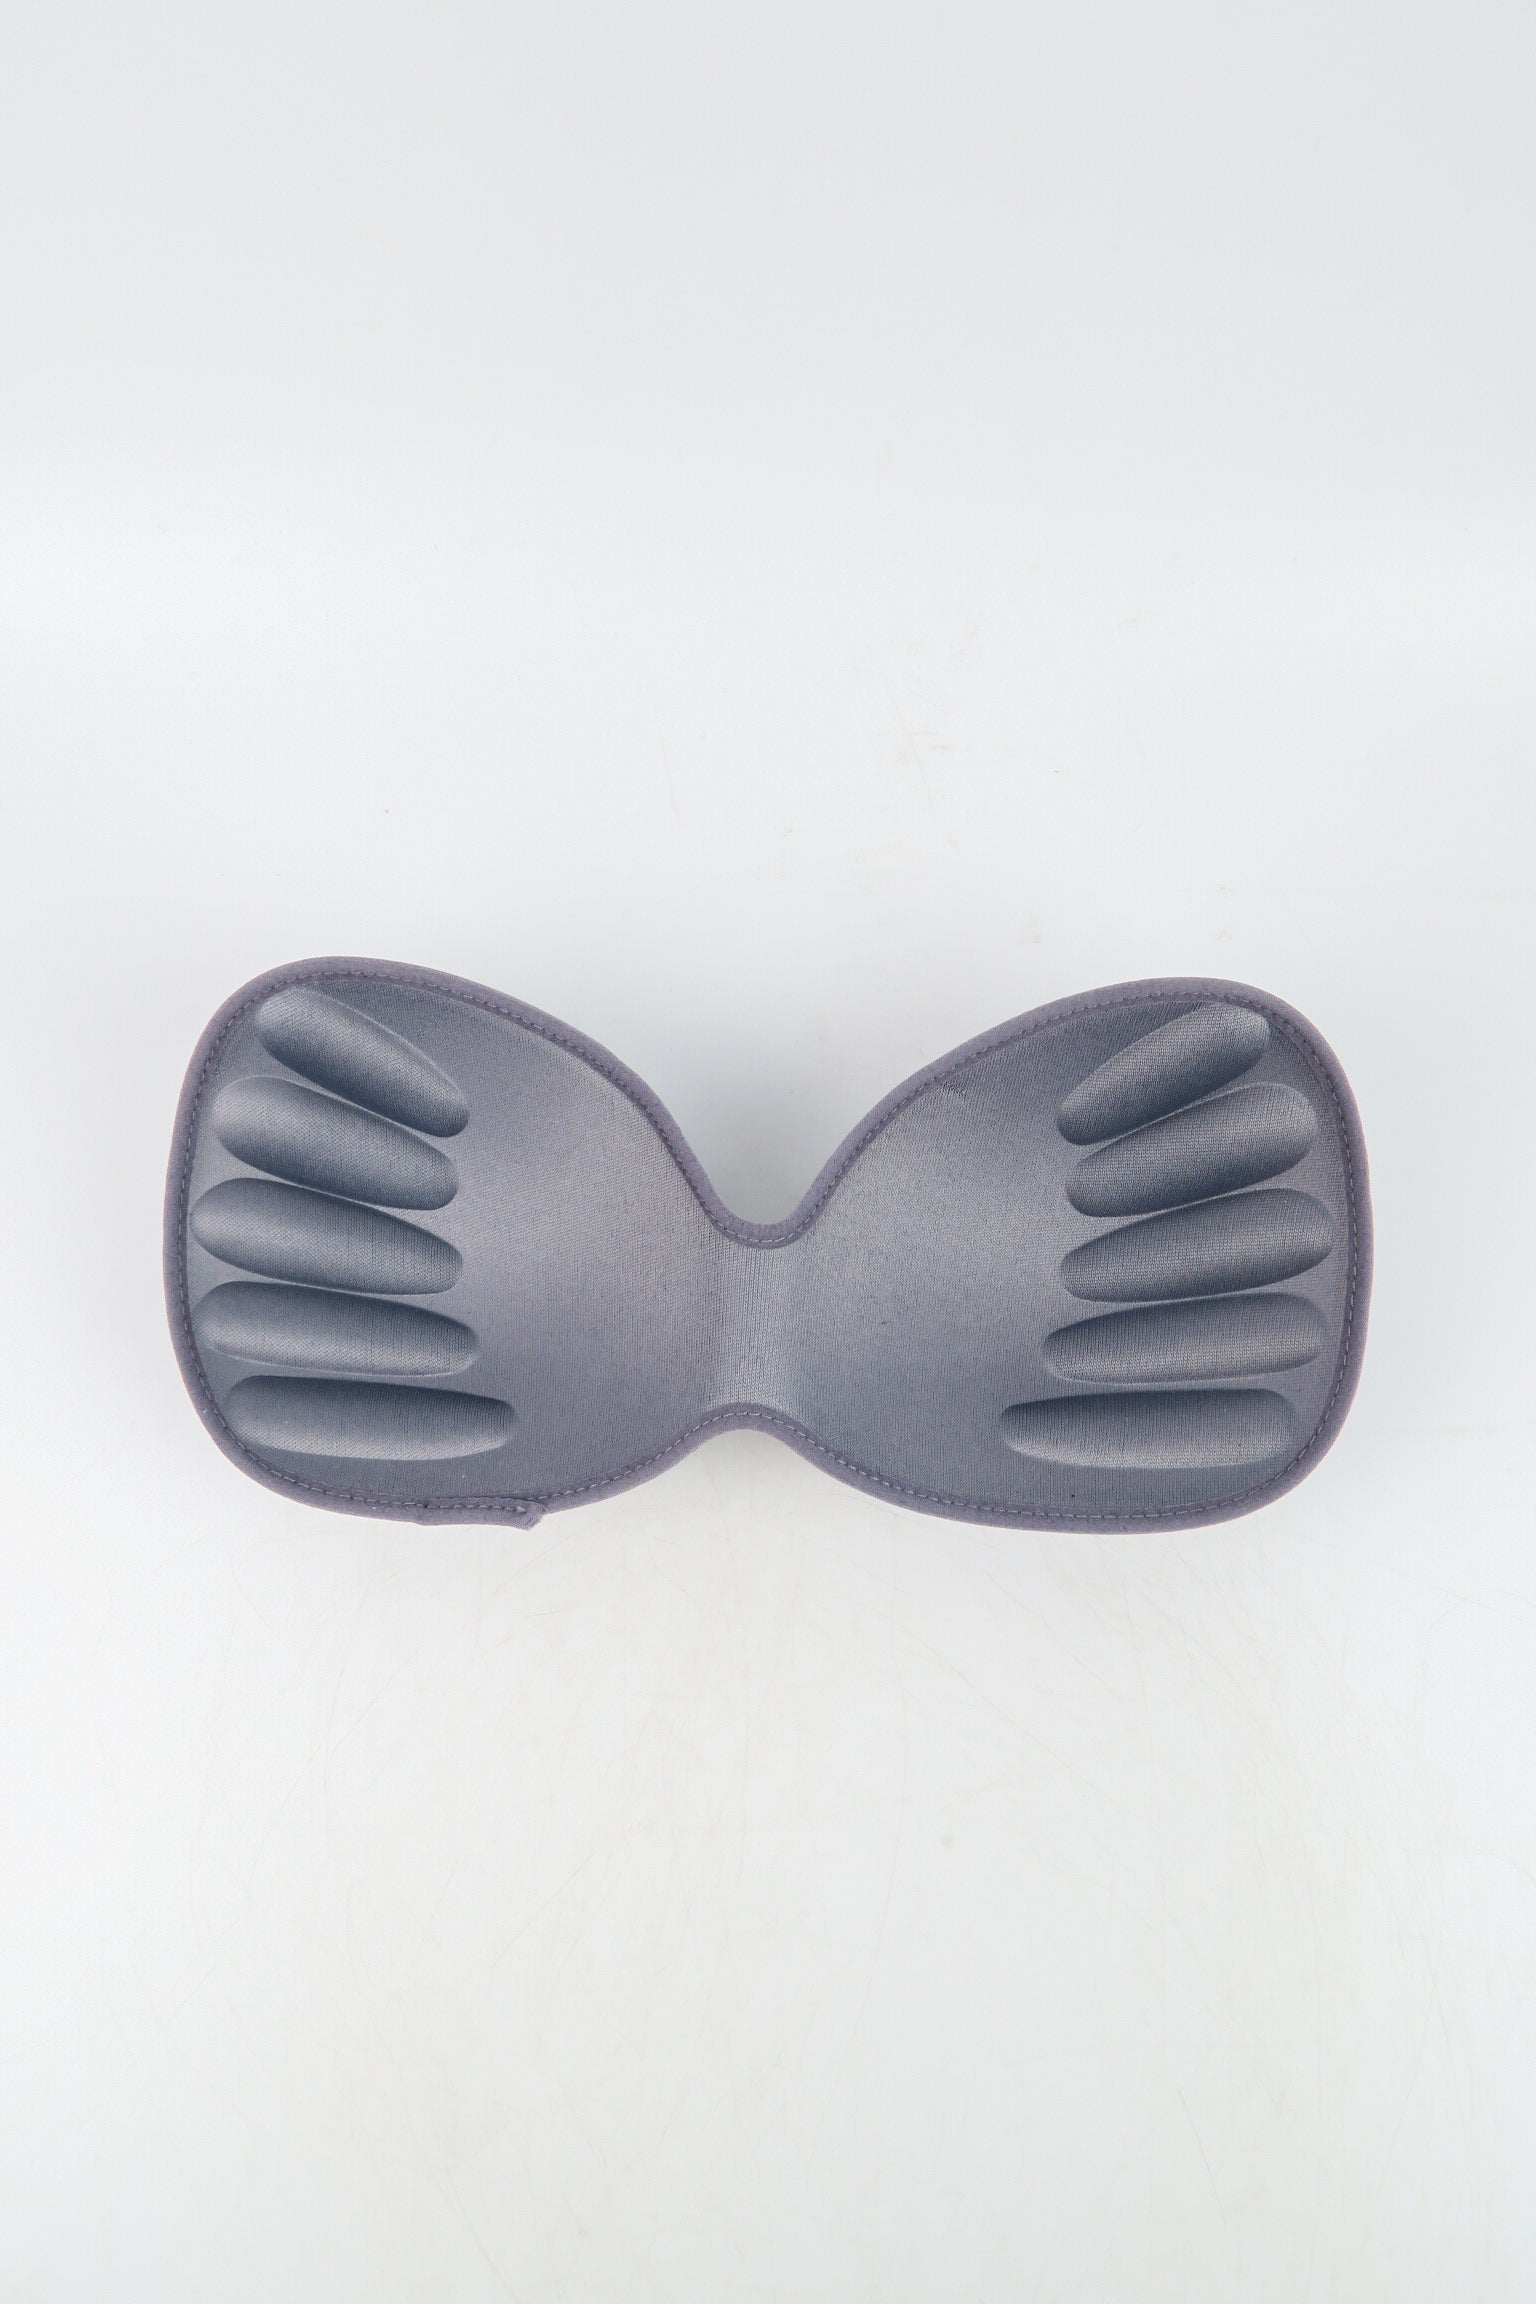 แผ่นฟองน้ำ เสริมทรง สำหรับชุดออกกำหลังกาย ชุดว่ายน้ำ และชุดชั้นใน - Breathable Sports Bra Inserts Matching Underwear Sponge Chest Pads